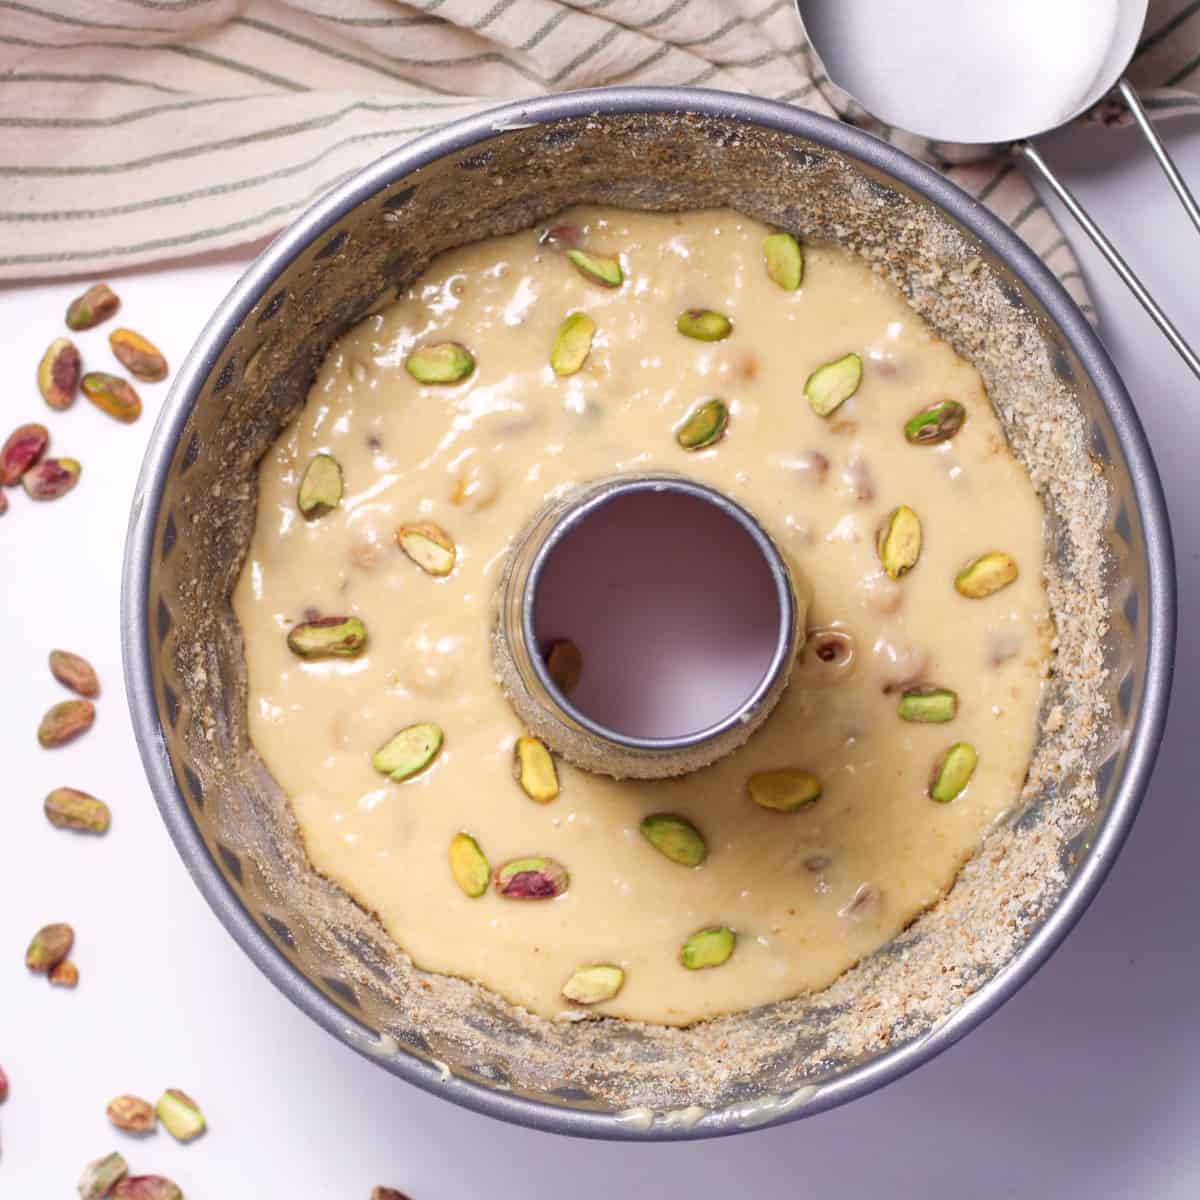 Pour pistachio cake ingedients into a bundt pan